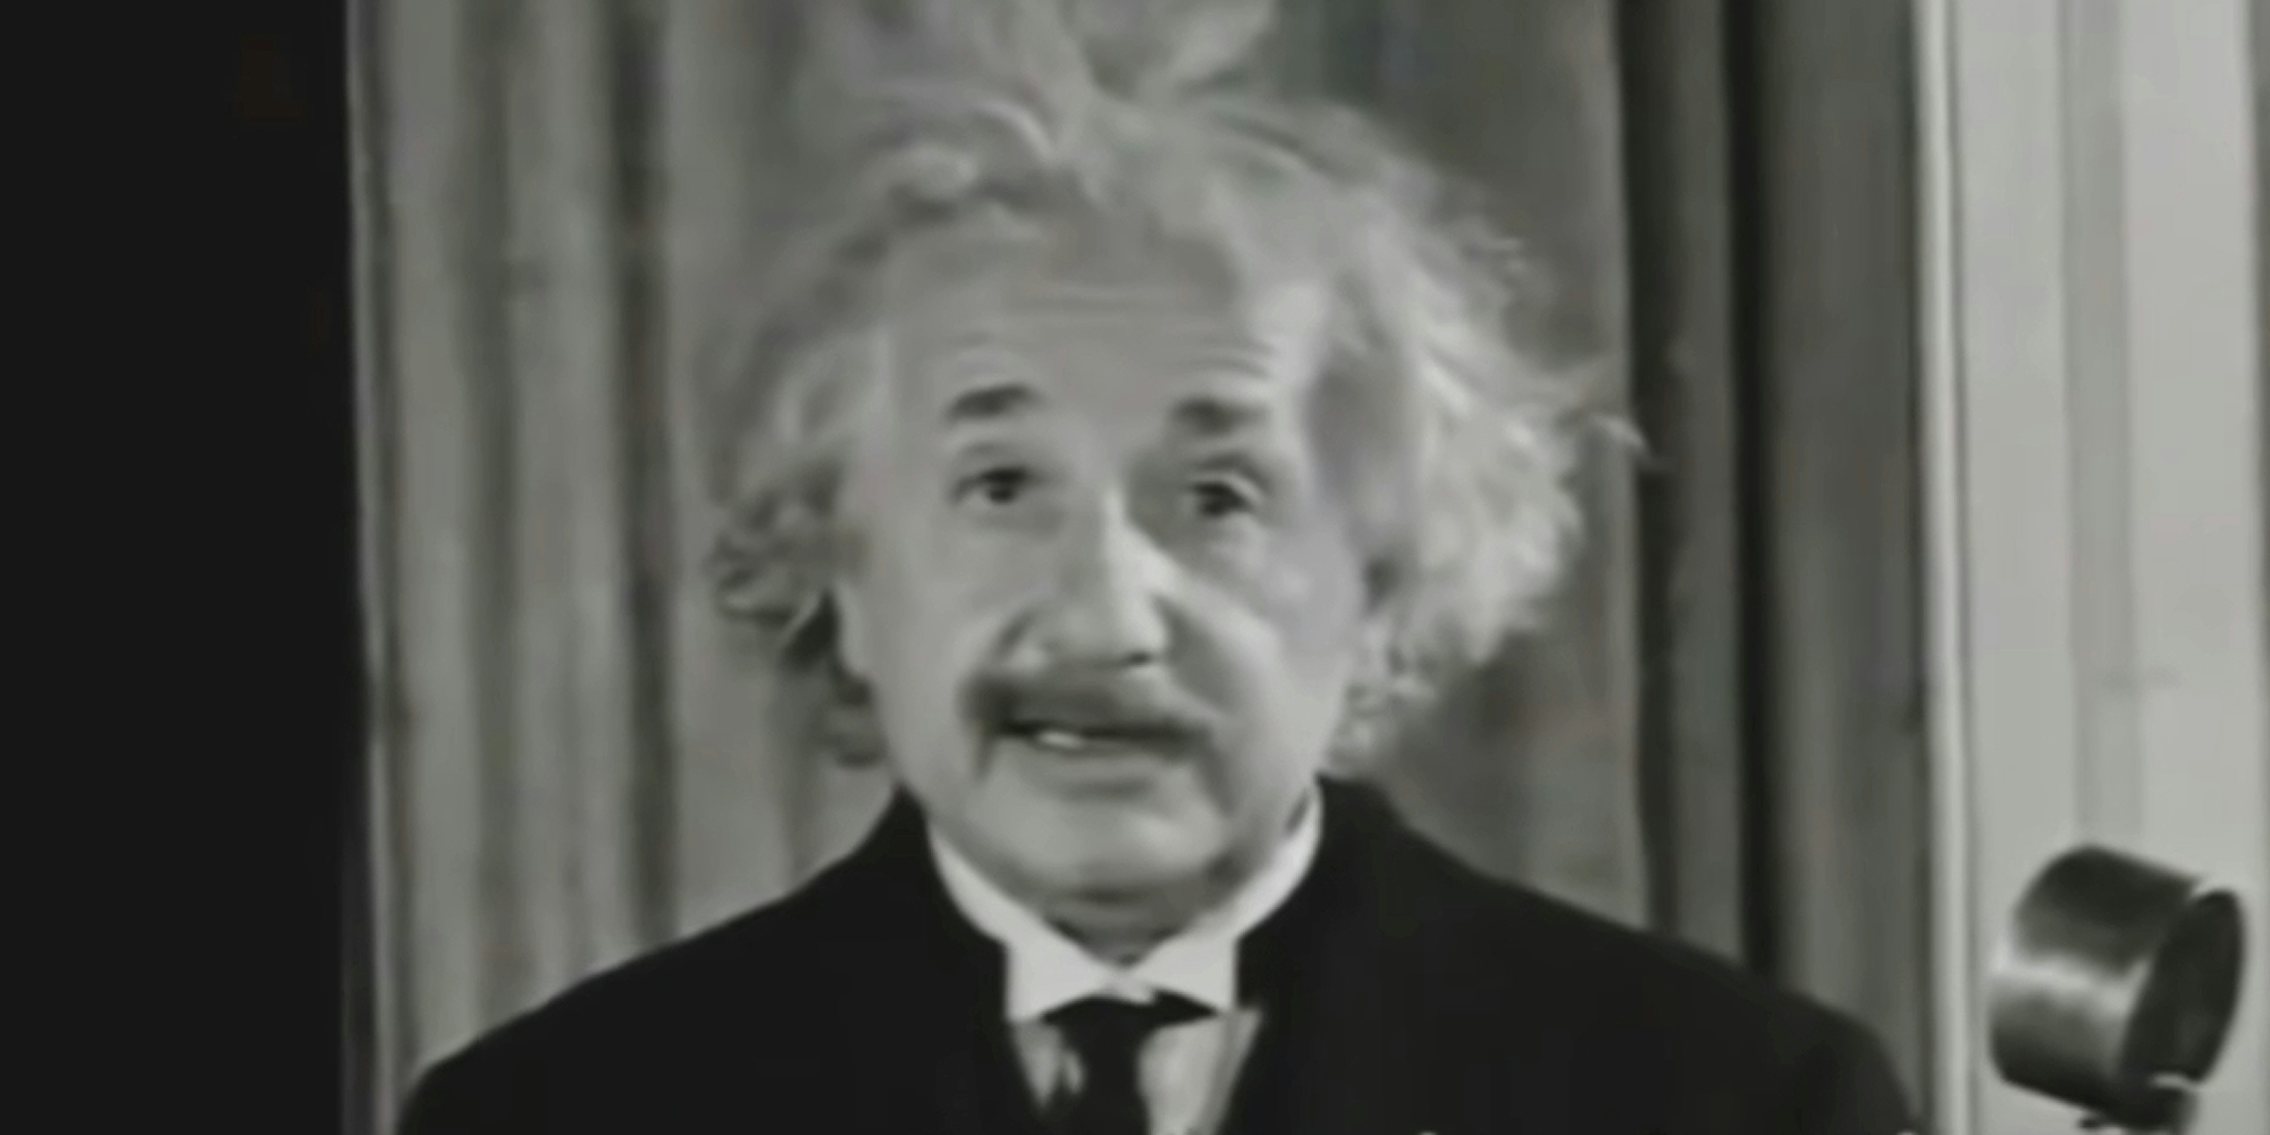 Albert Einstein speaking. Albert Einstein memes began popping up on the internet after Oppenhimer's release.